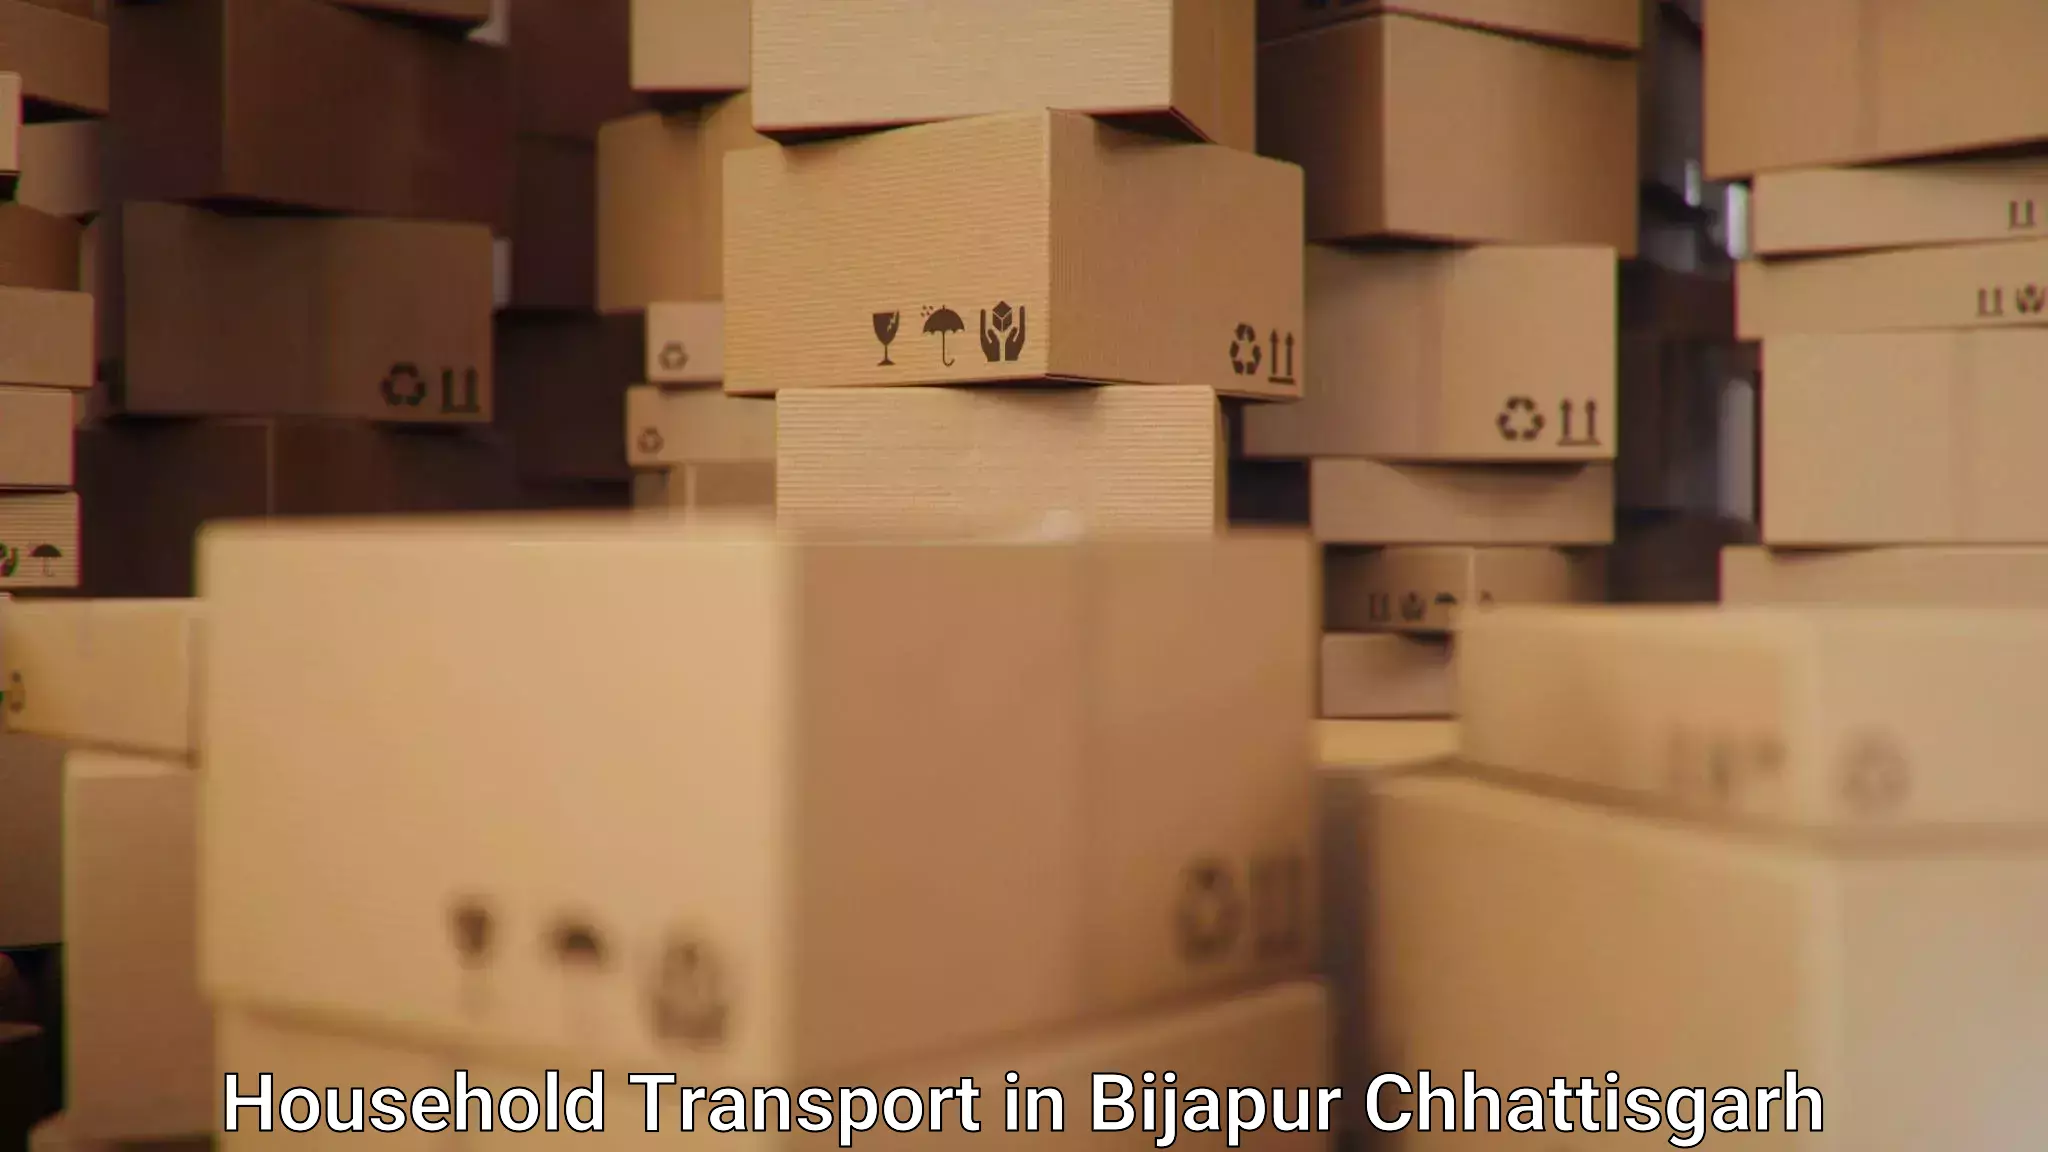 Furniture handling services in Bijapur Chhattisgarh